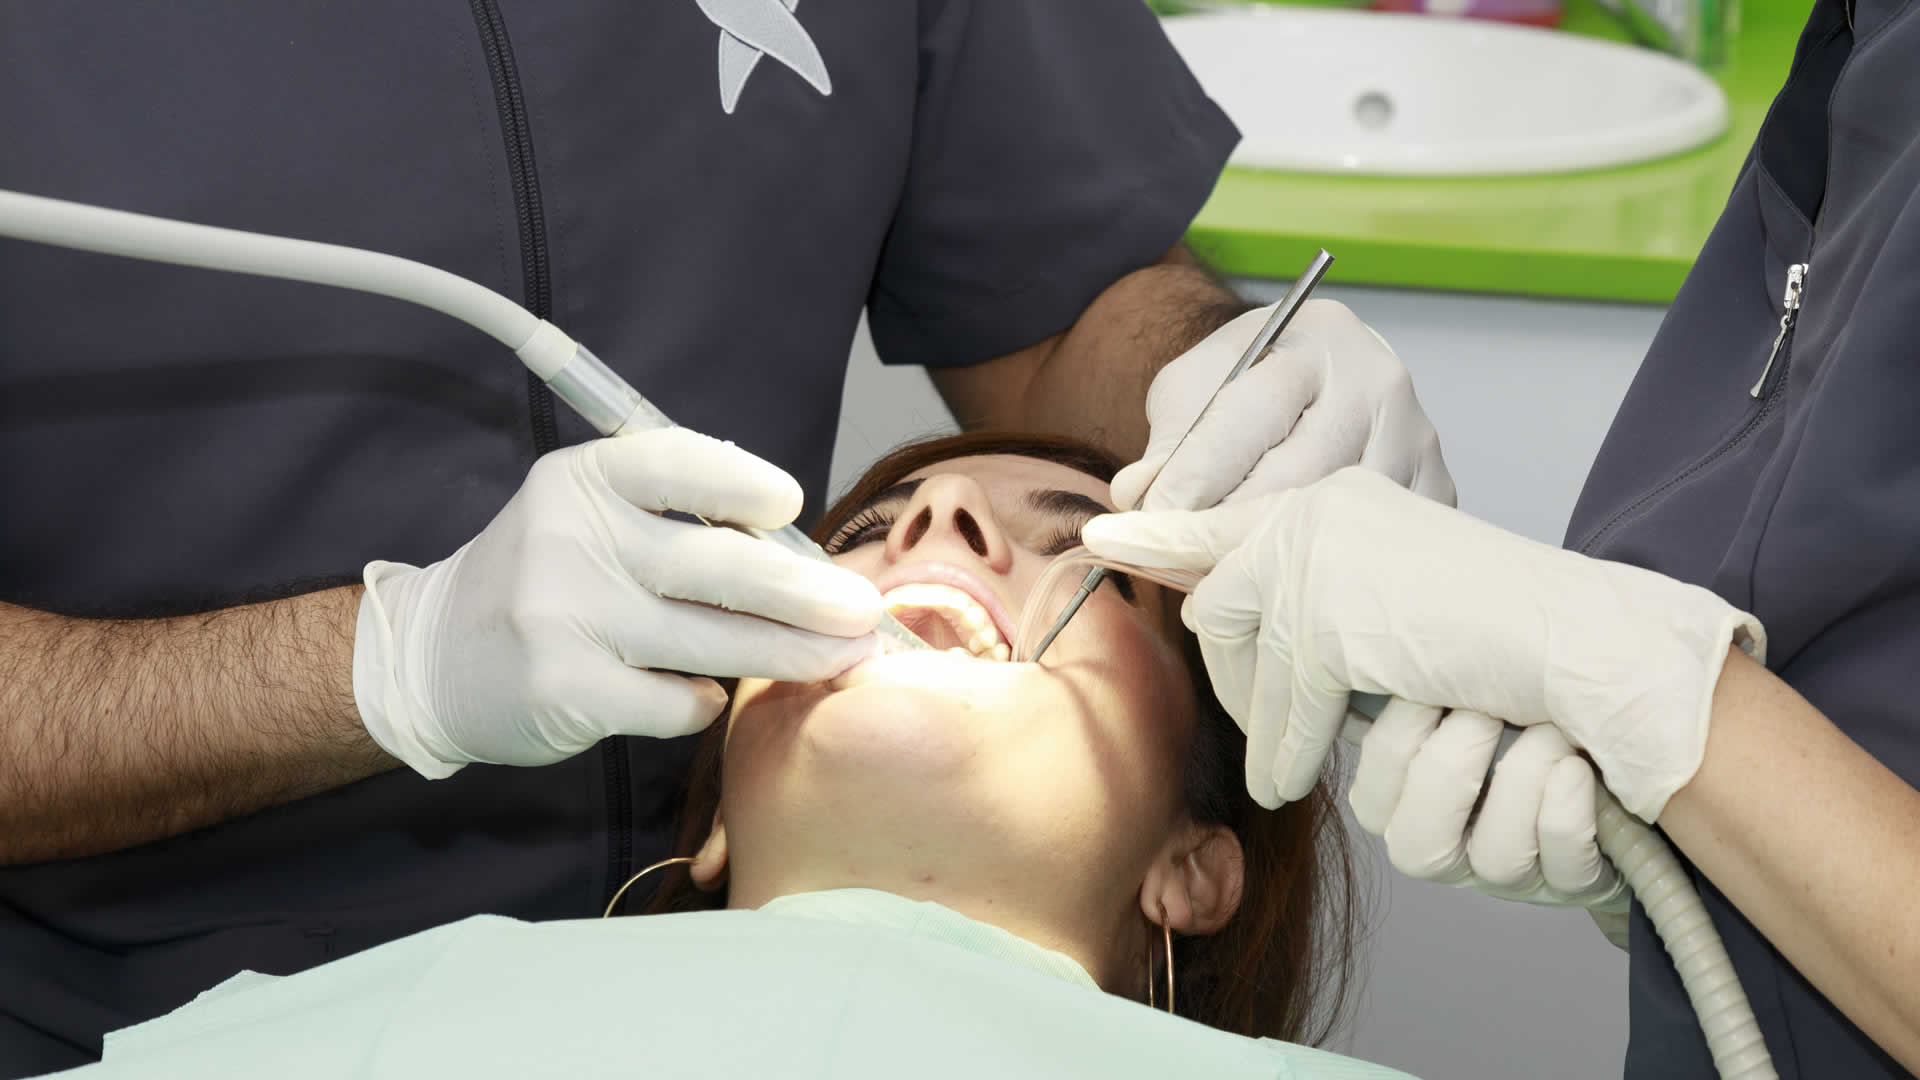 Cirugía Dental